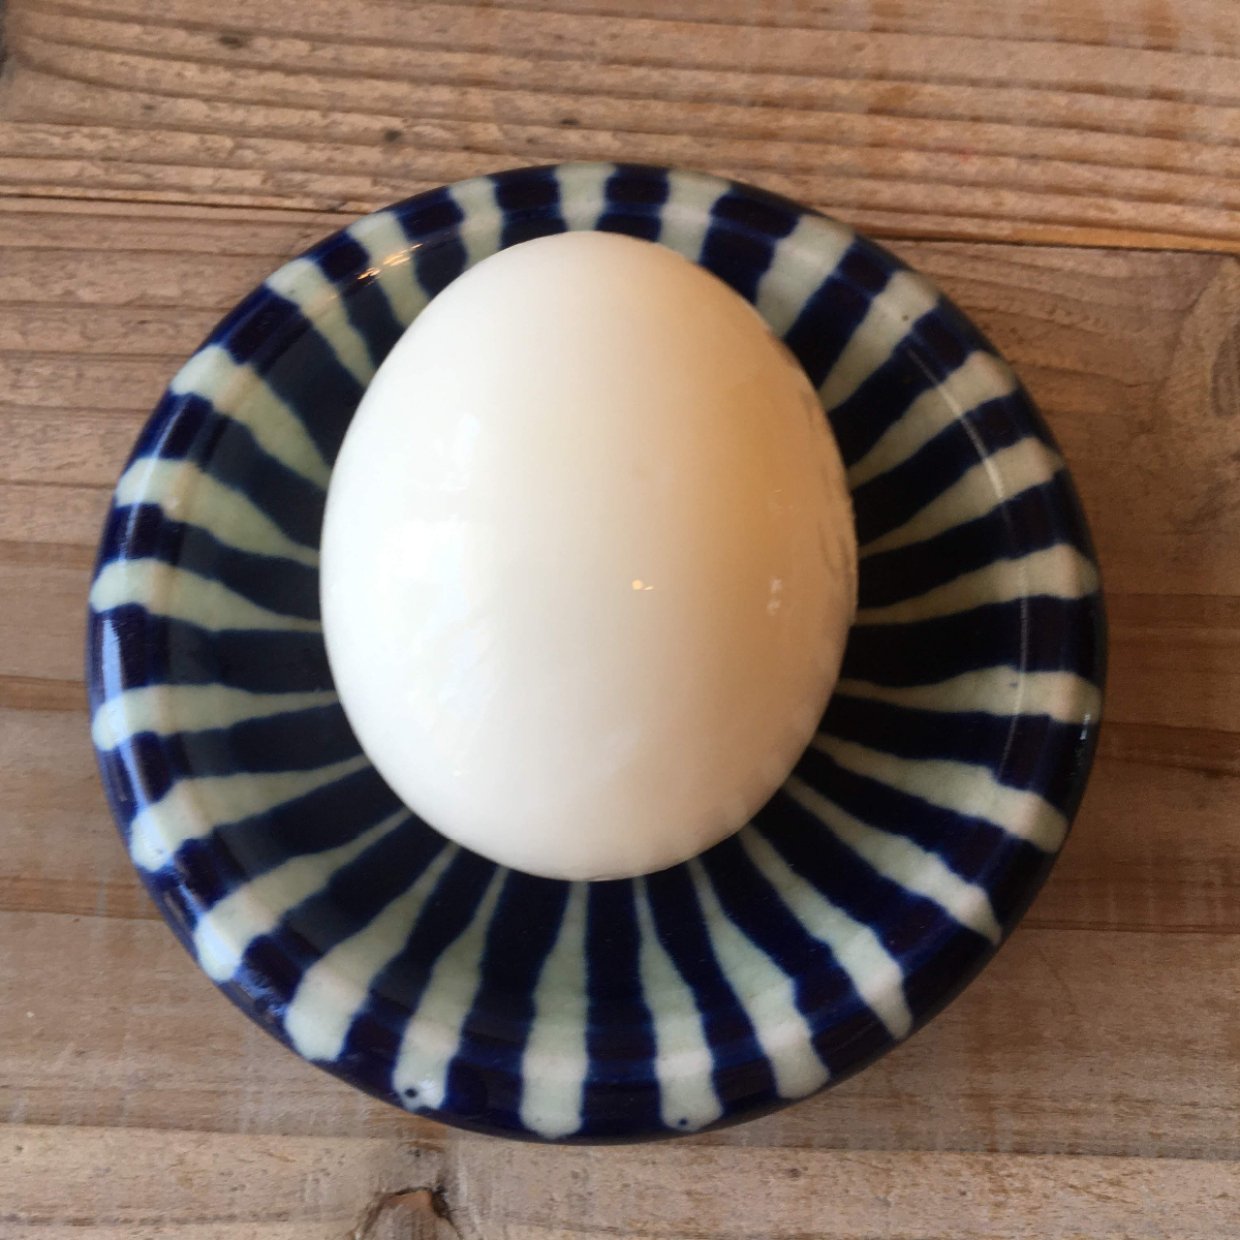  「ゆで卵の殻」をストレスなく50秒でむく方法 